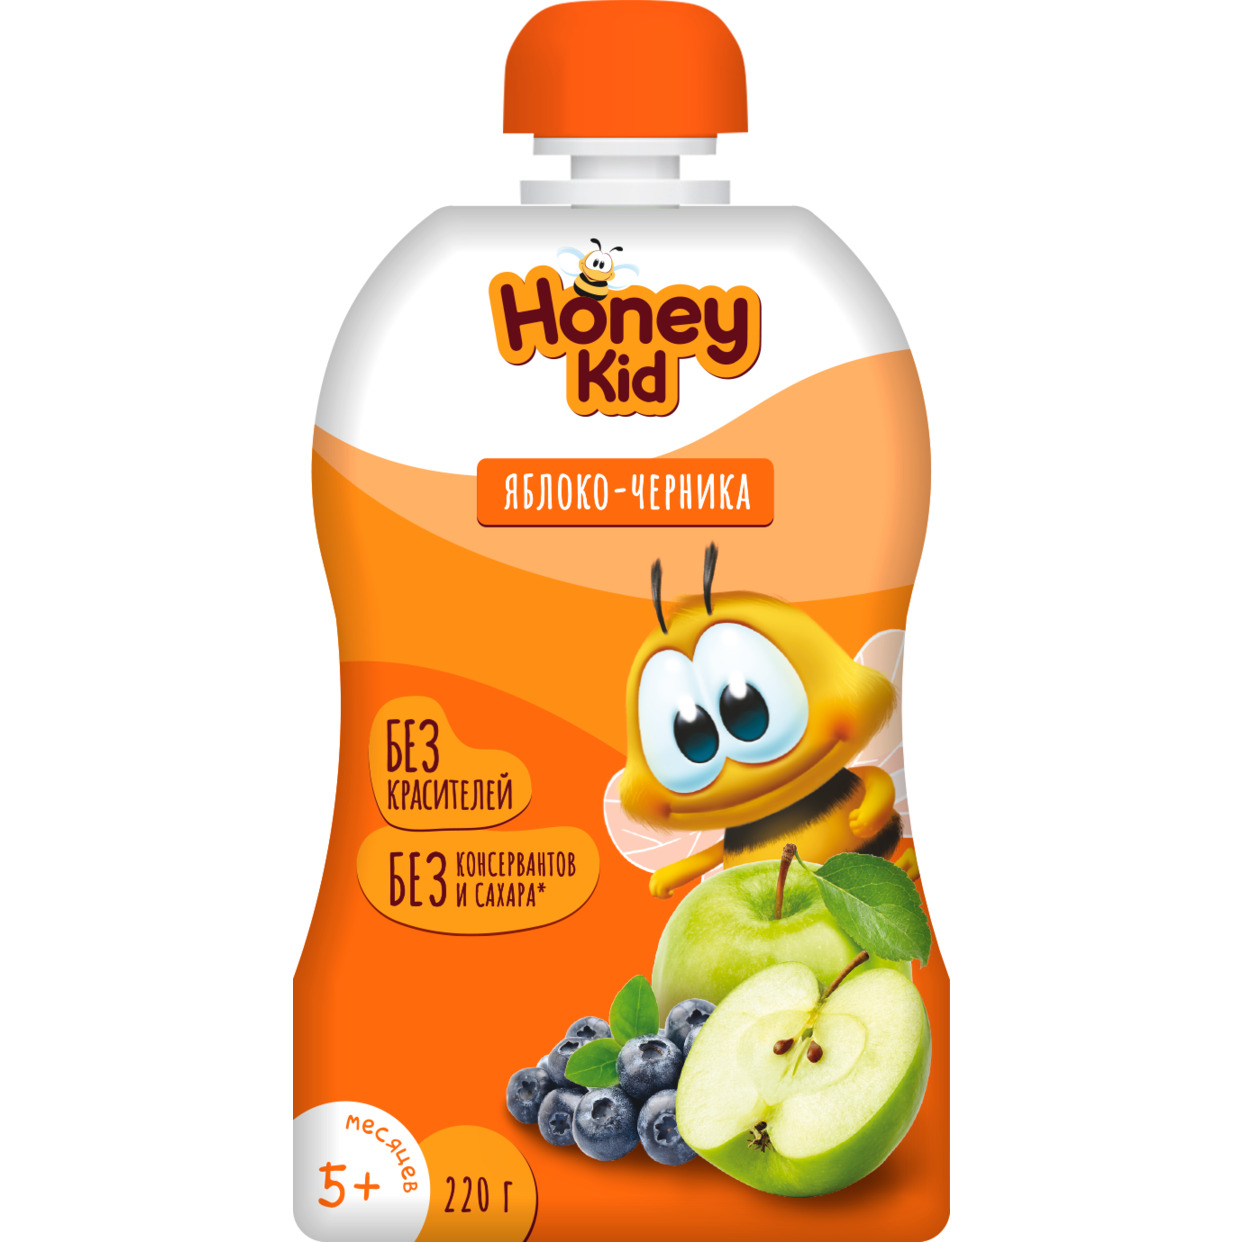 Пюре "Honey Kid" из яблок и черники для детского питания для детей раннего возраста гомогенизированное, стерилизованное с 5 месяцев 220г по акции в Пятерочке